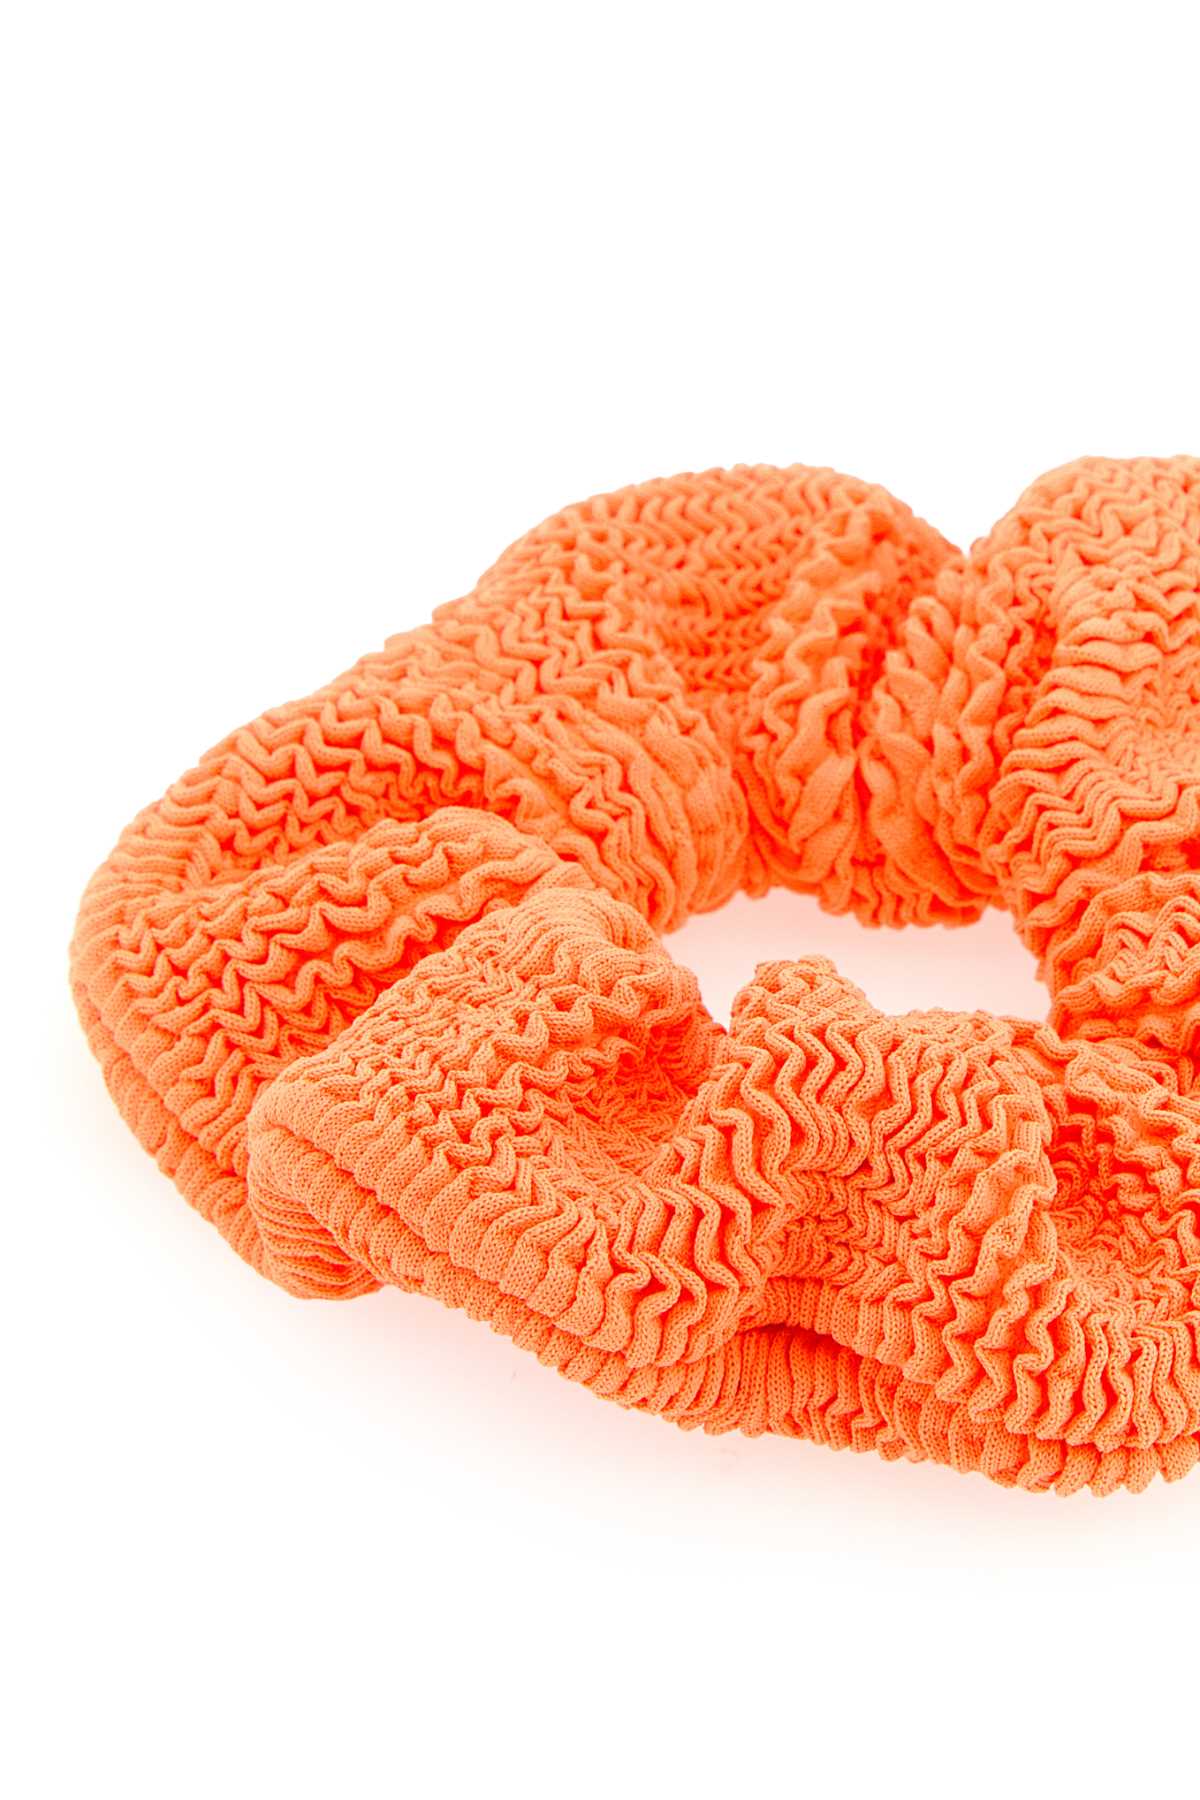 Hunza G Orange Fabric Scrunchie